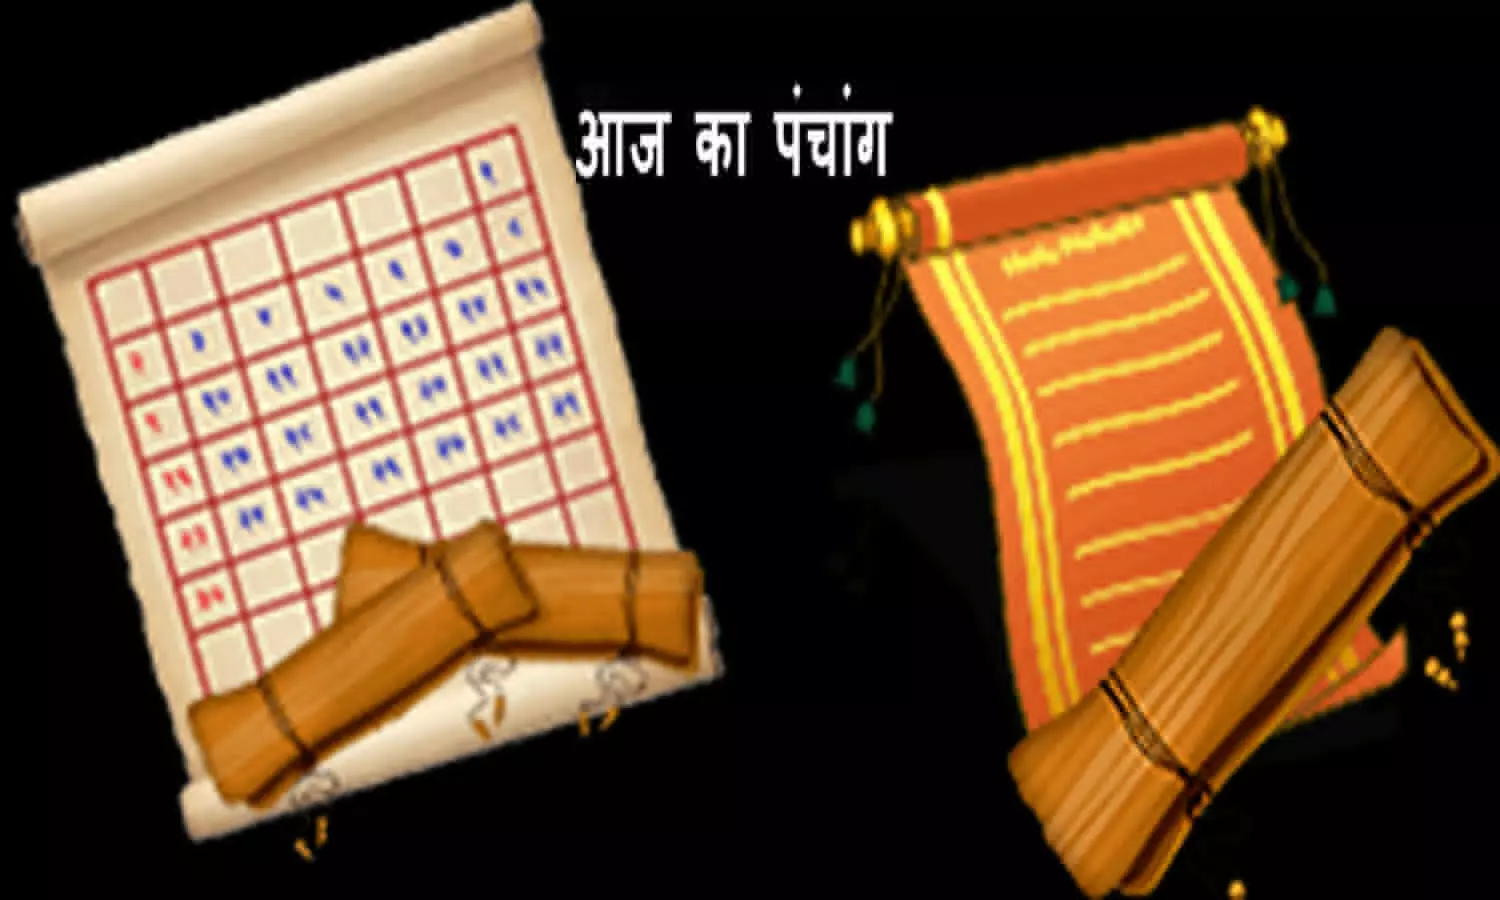 21 December 2022 Ka Panchang Tithi in Hindi : आज का पंचांग बताएगा कब है शुभ योग और आज का व्रत त्योहार